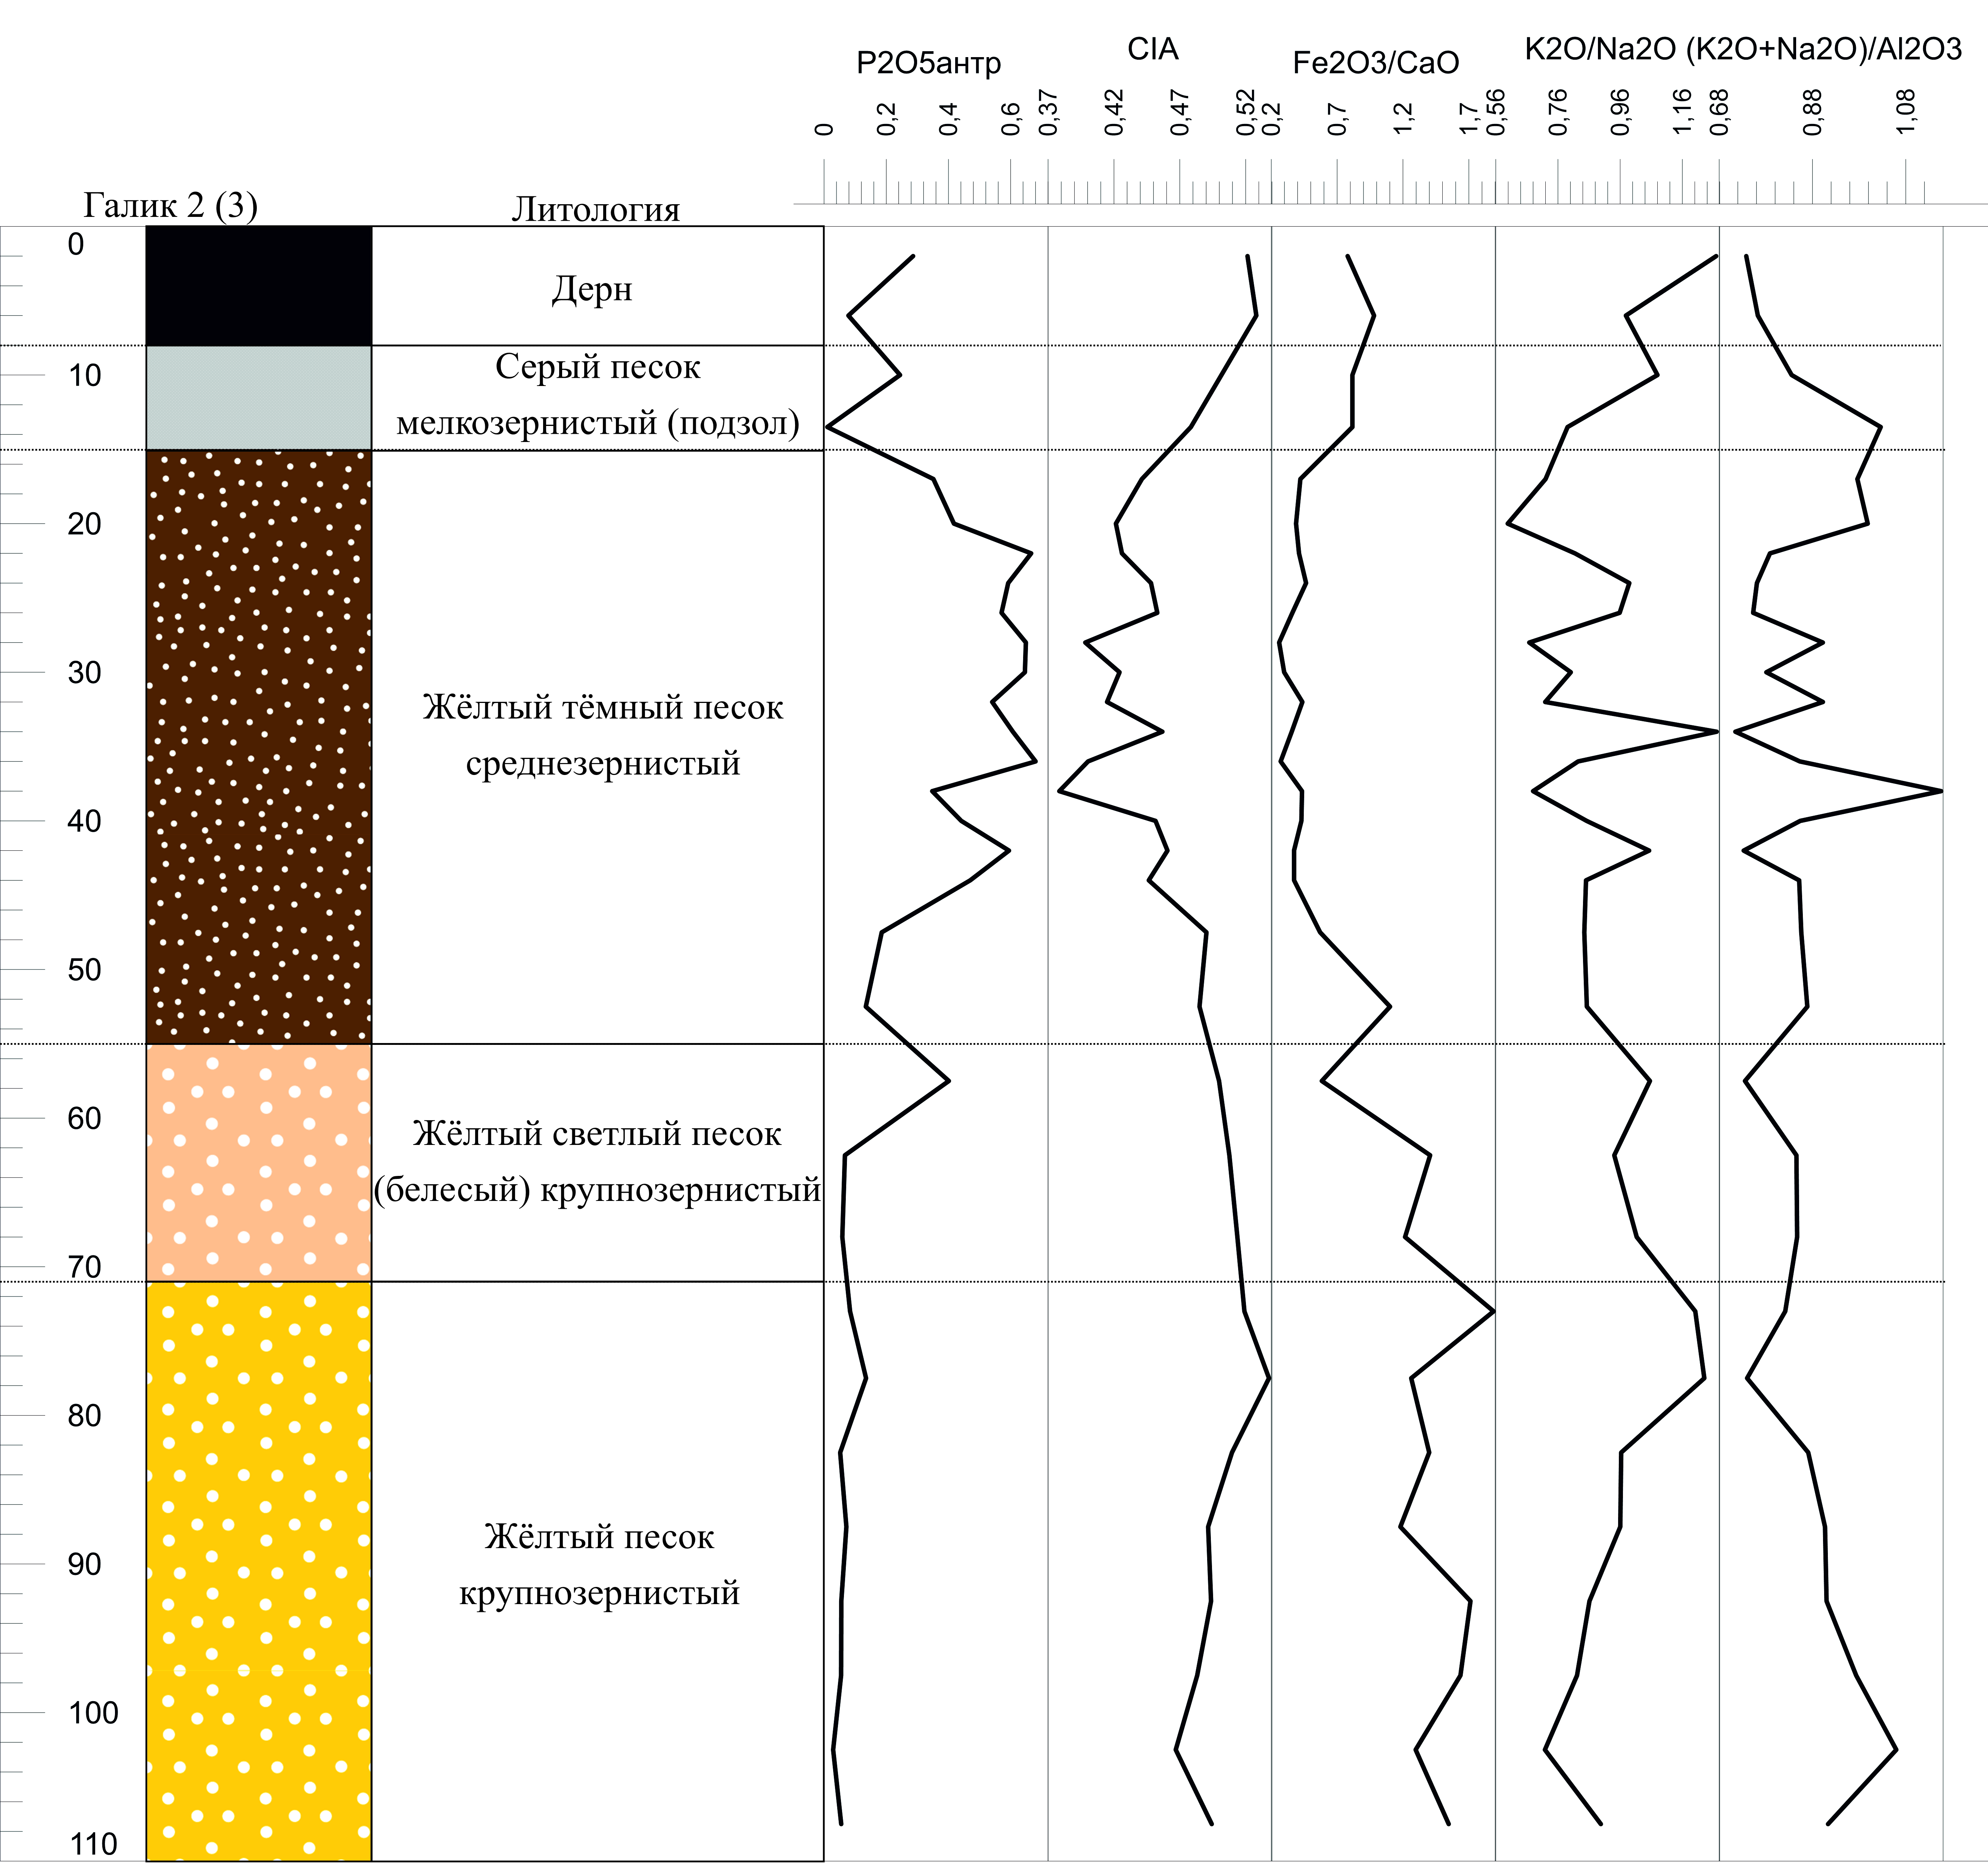 Графики изменения показателей геохимических индикаторов ландшафтно-климатических условий и антропогенной активности для археологического памятника «Галик 2(3)»